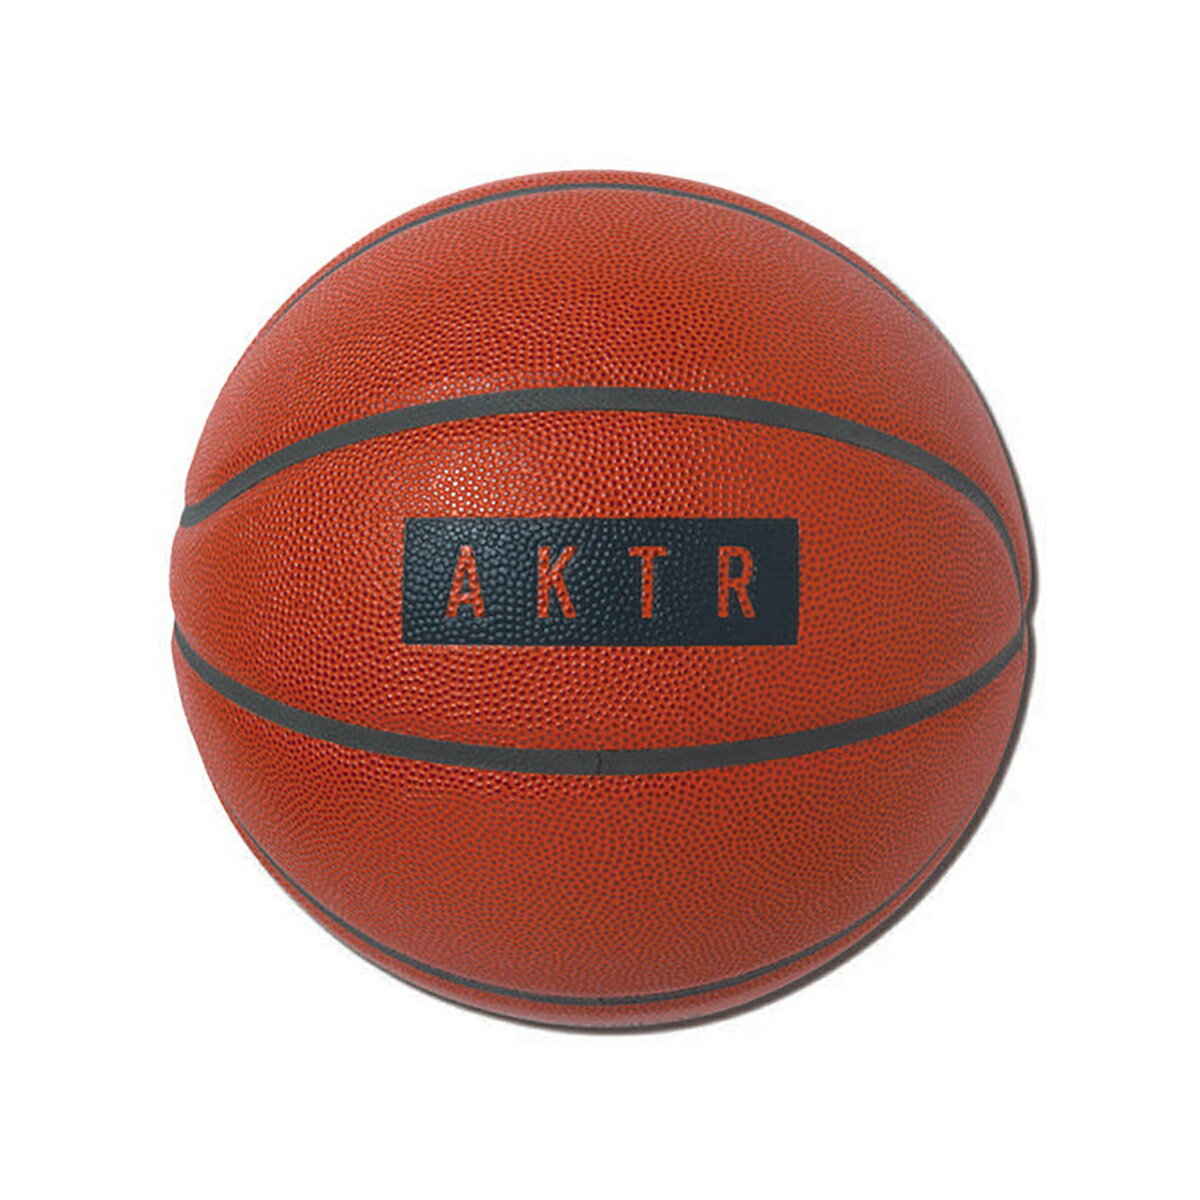 ボール 【ポイント5倍 16日1:59まで】AKTR xTACHIKARA BASIC BALL(ORANGExBLACK)(アクター x タチカラ ベーシックボール)【メンズ レディース】【バスケットボール 7号球 コラボ】【24SS】